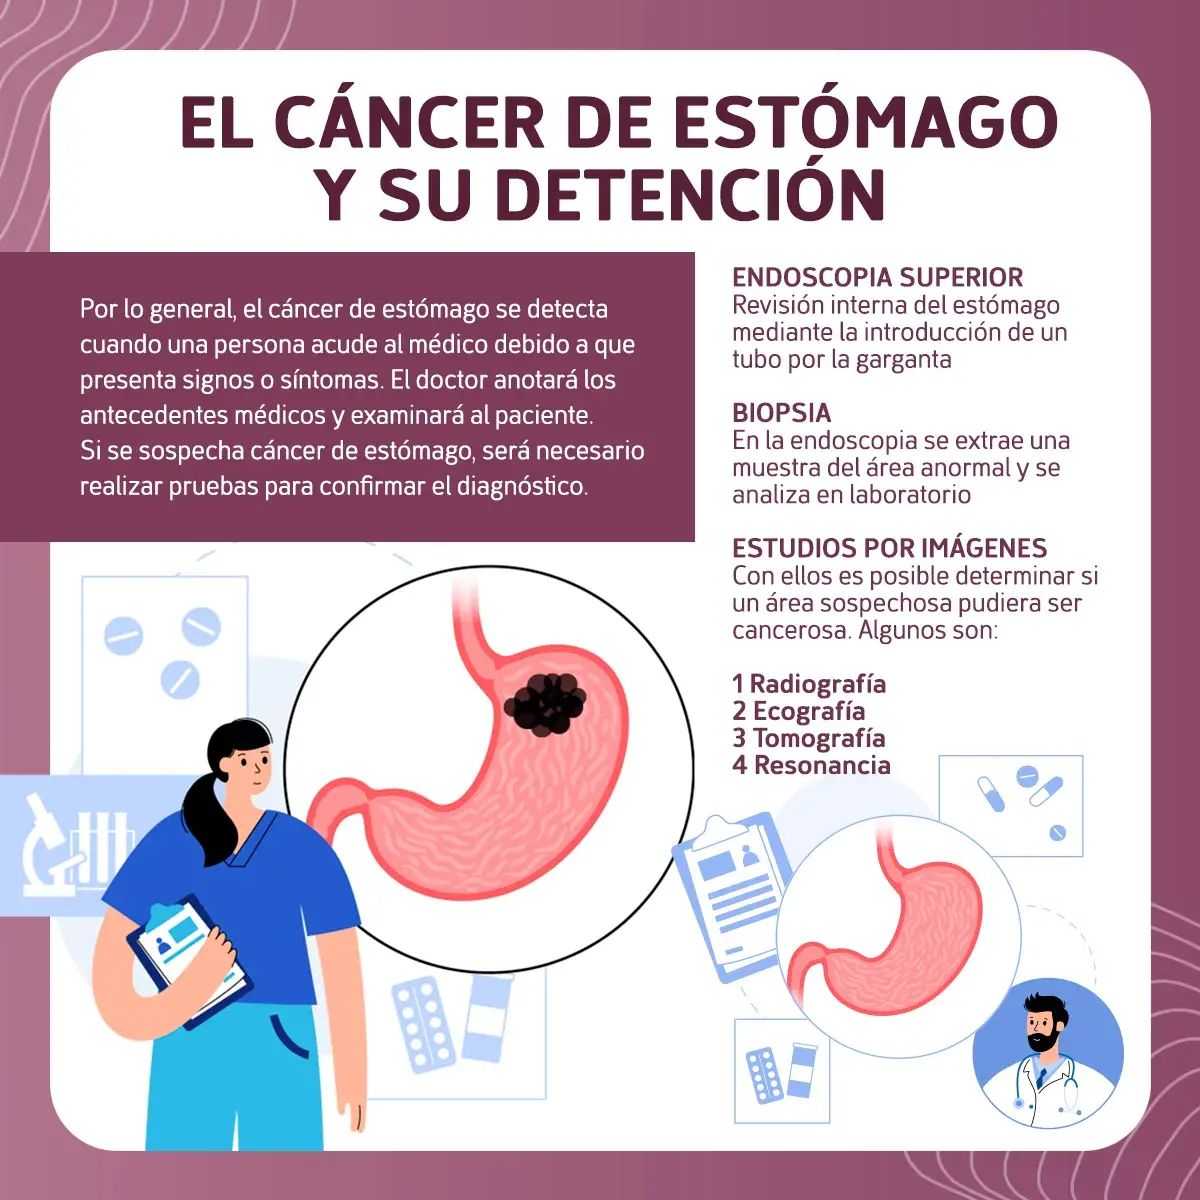 Pruebas de detección del cáncer de estómago (radiografía, ecografía, tomografía, resonancia) 